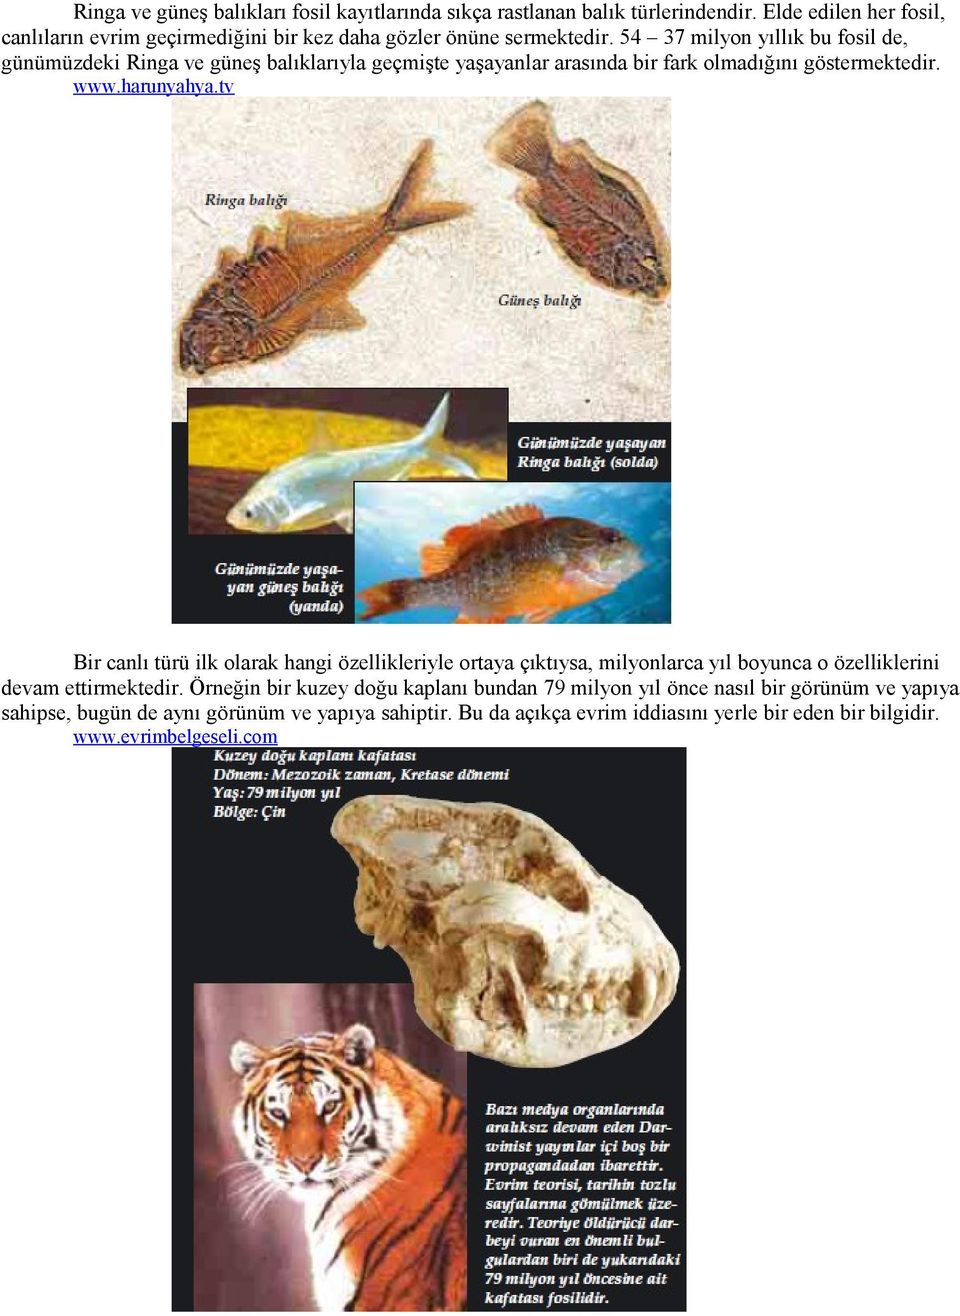 54 37 milyon yıllık bu fosil de, günümüzdeki Ringa ve güneş balıklarıyla geçmişte yaşayanlar arasında bir fark olmadığını göstermektedir. www.harunyahya.